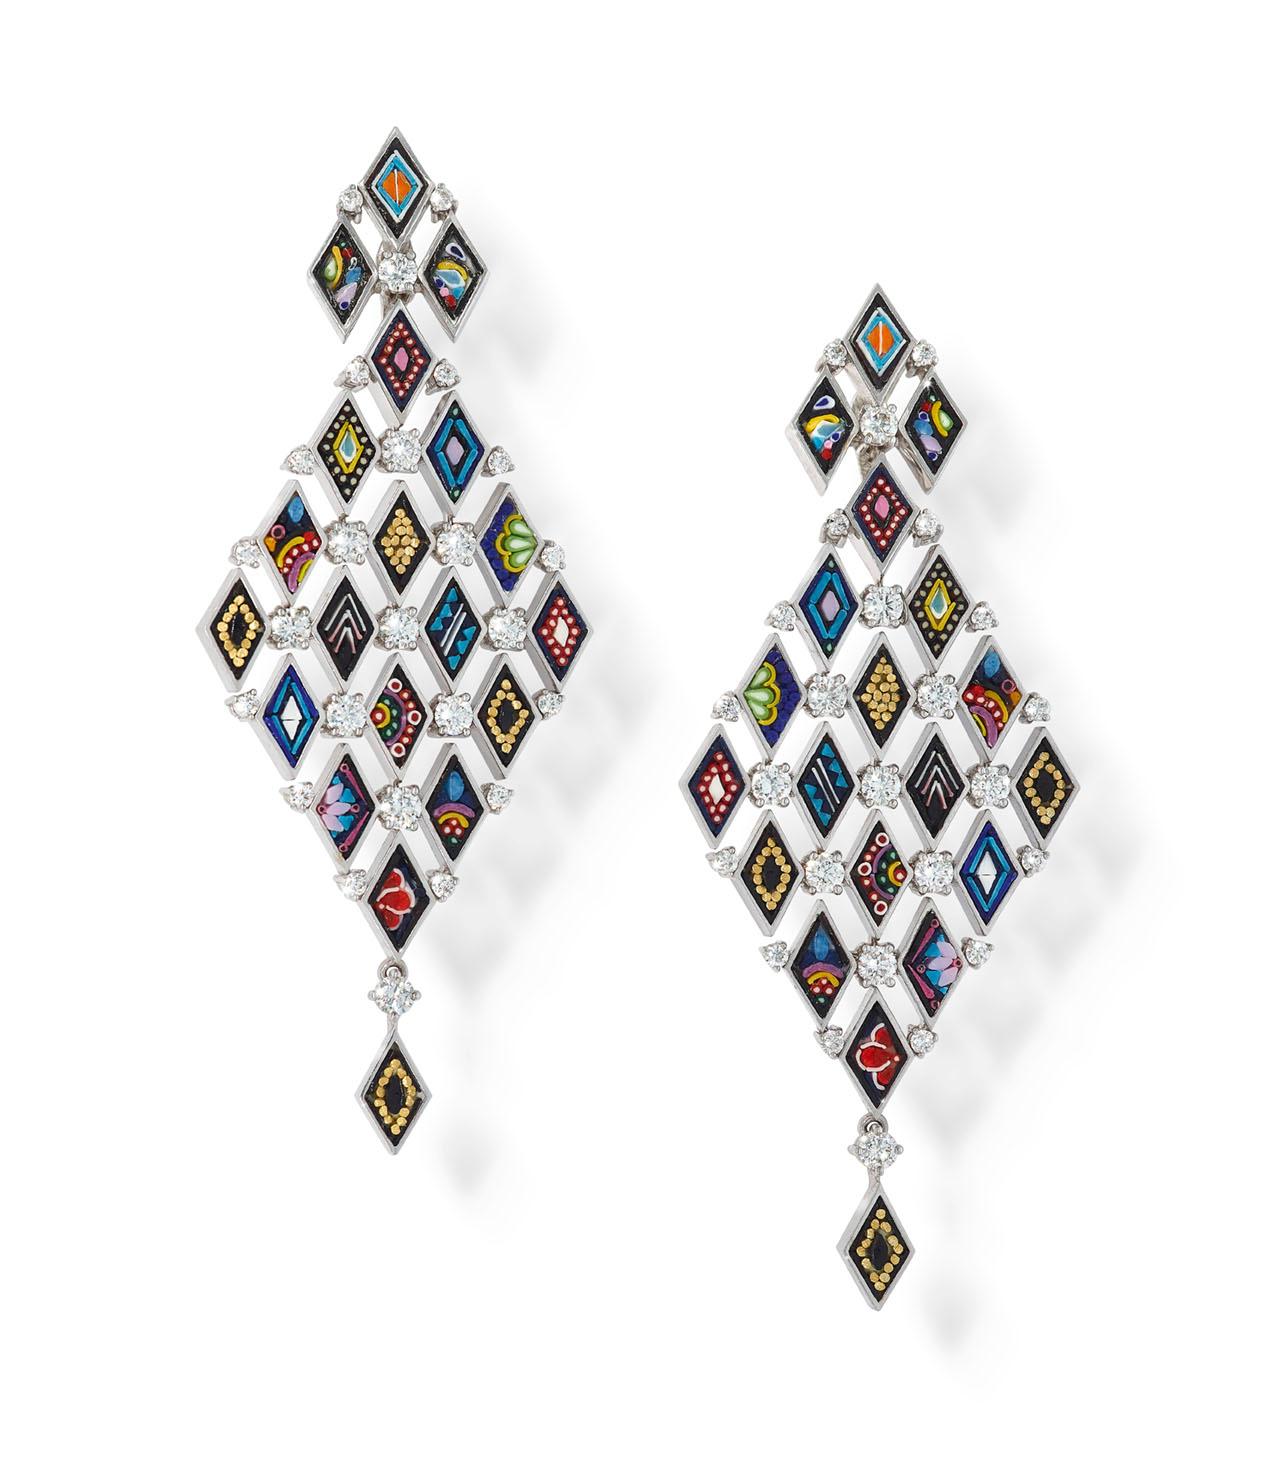 Micro Mosaic Künstler winzige handgewebte venezianische Emaille-Stäbchen, die durch das Schmelzen von neun Grundfarben mit Diamantstaub bei hoher Temperatur gewonnen werden, wodurch endlose Kombinationen von Tönen und Nuancen möglich sind. Die Stäbe